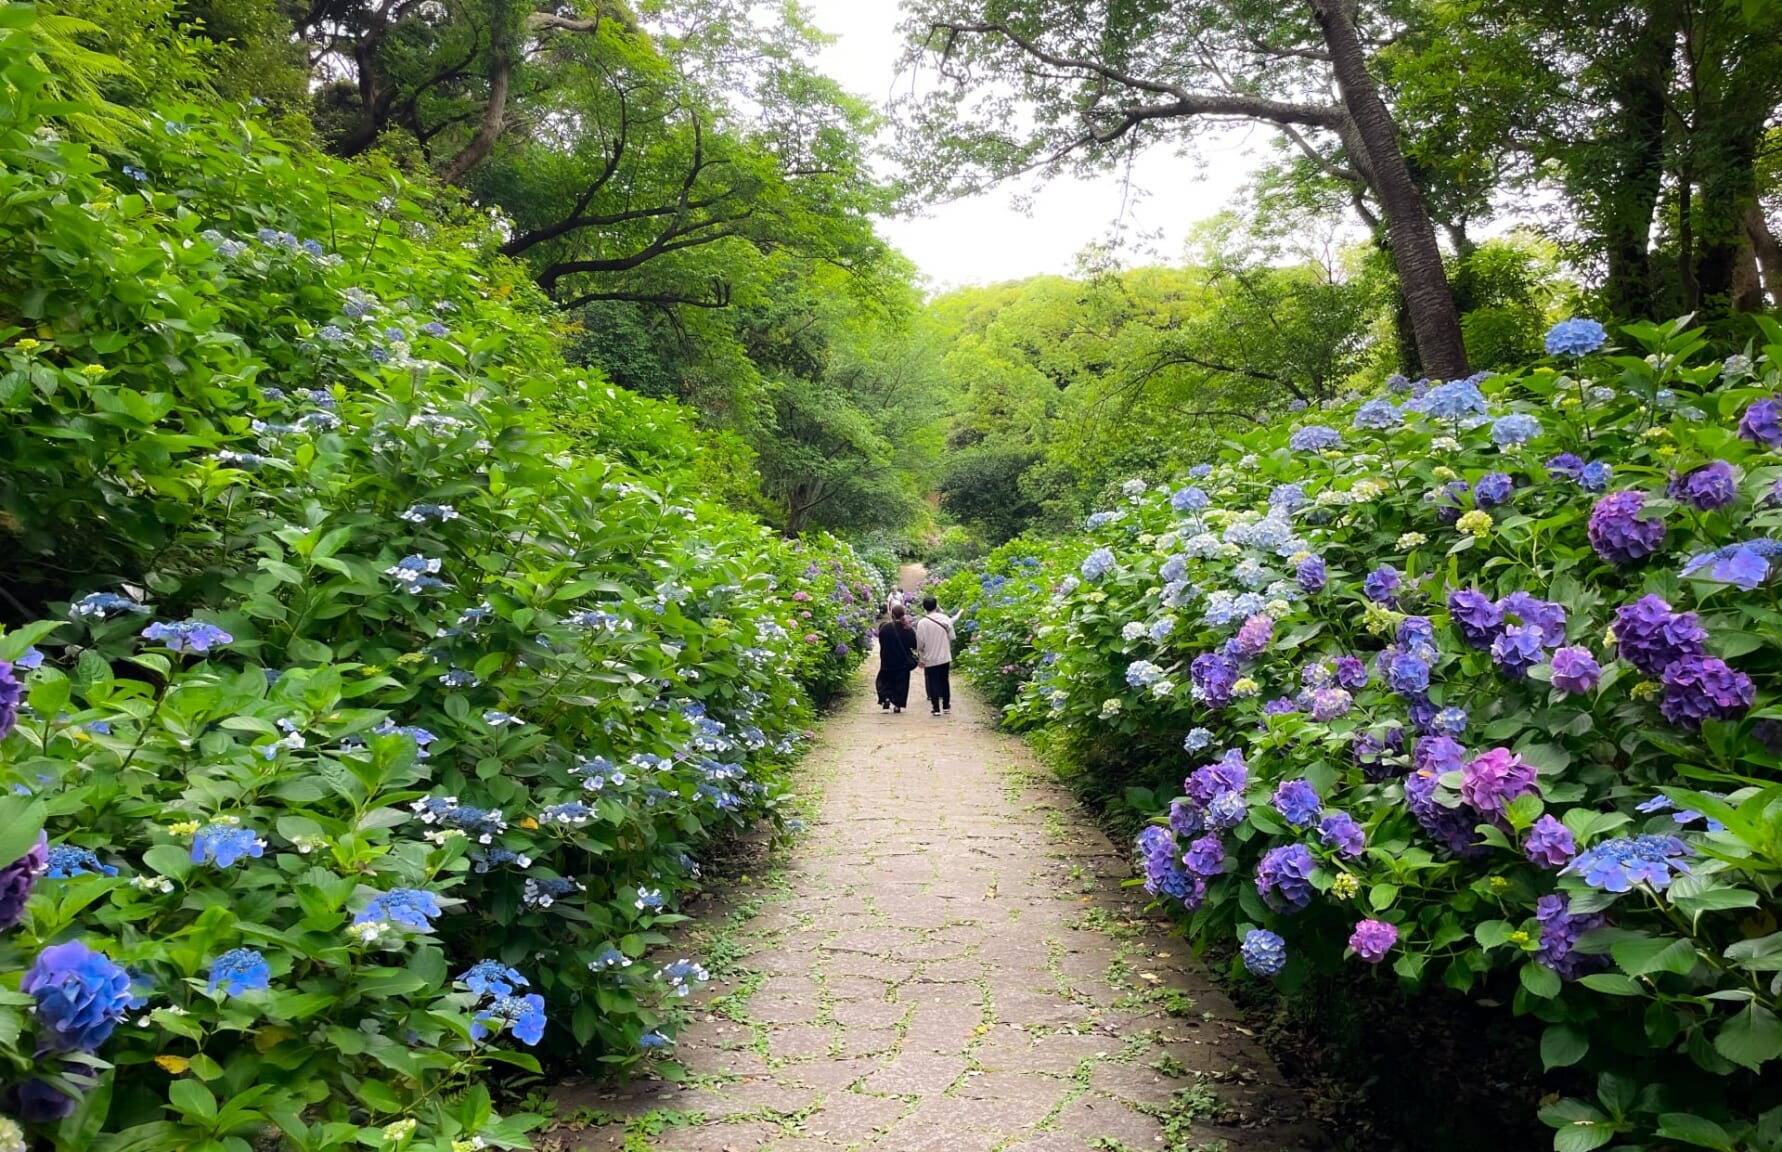 Hydrangeas at Izu Shimoda Park, Shizuoka